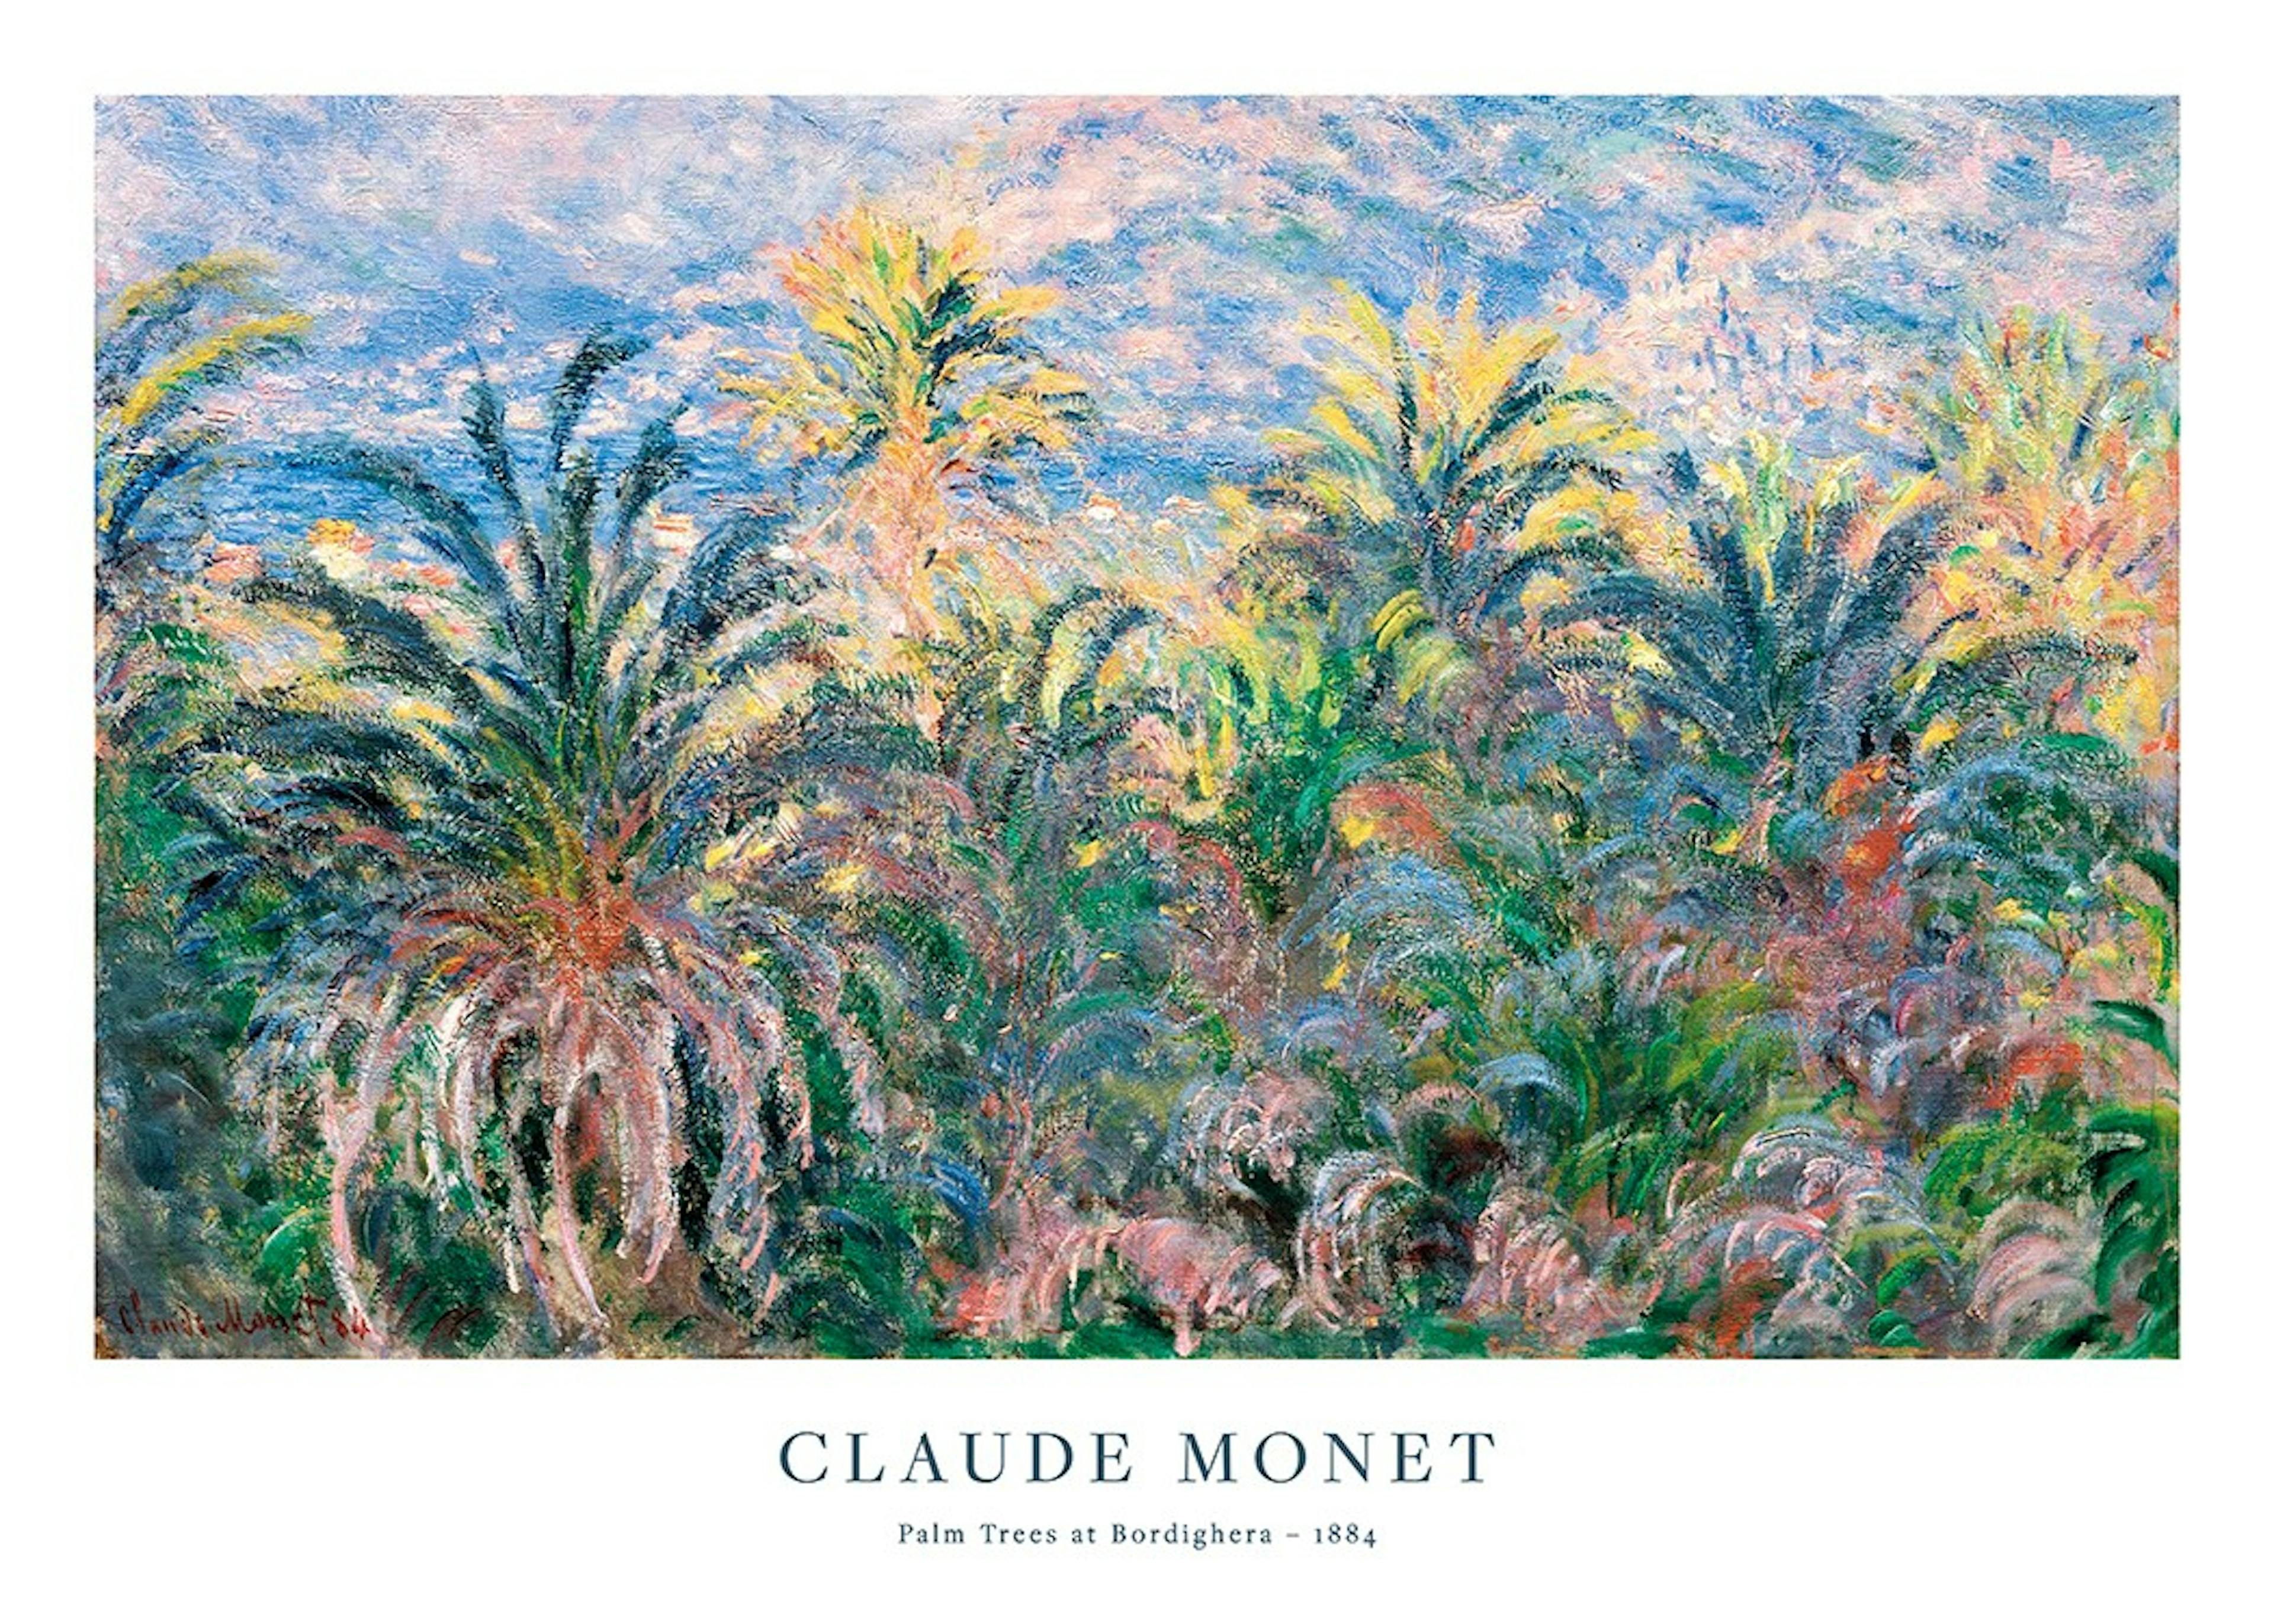 Monet - Palm Trees at Bordighera 포스터 0